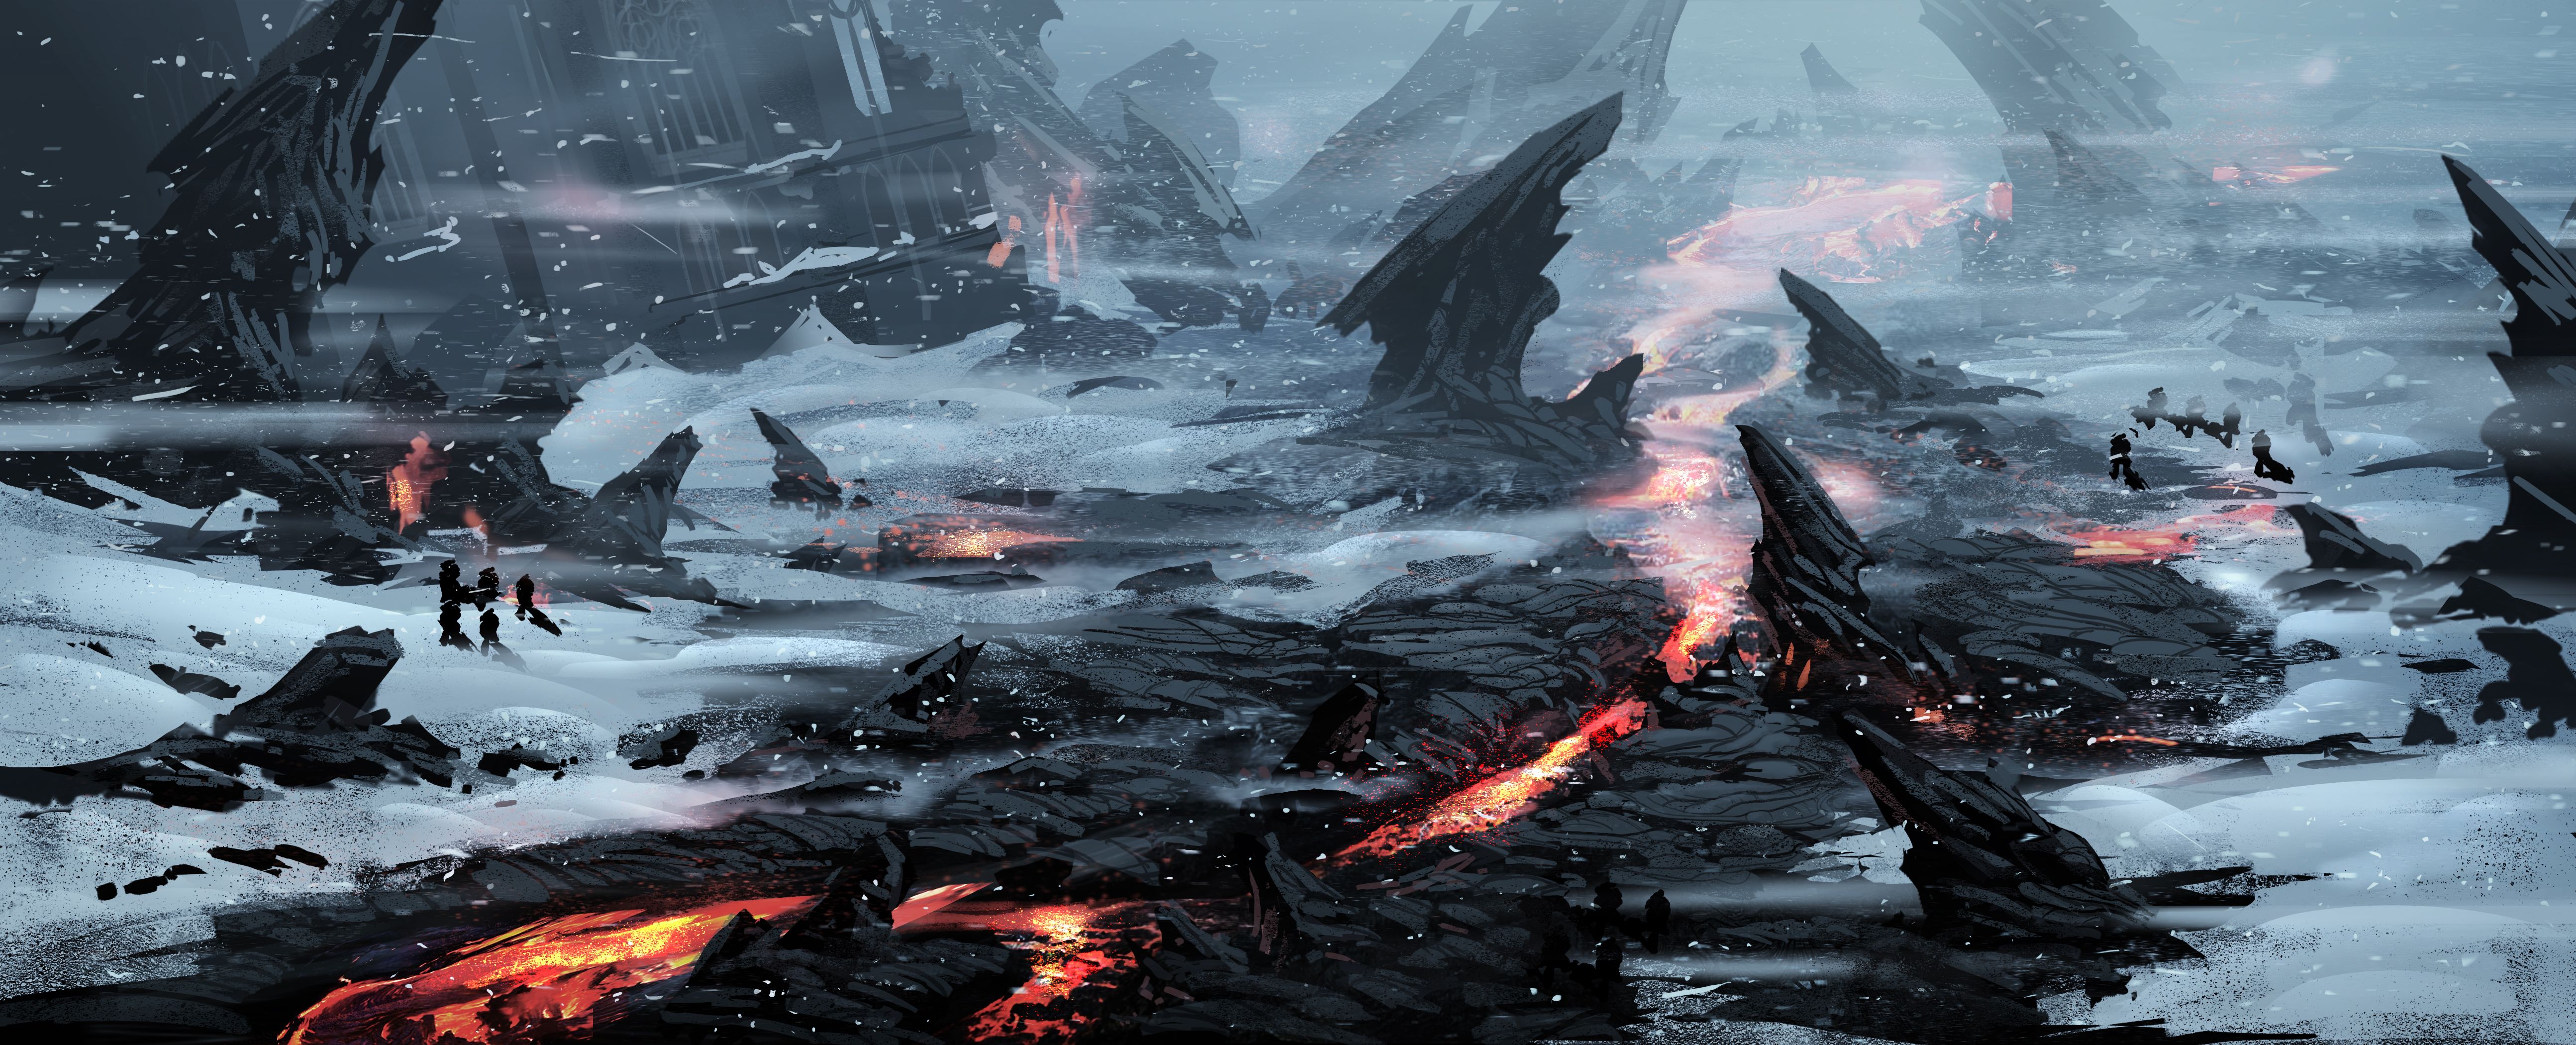 Warhammer 40,000: Dawn Of War III HD wallpapers, Desktop wallpaper - most viewed